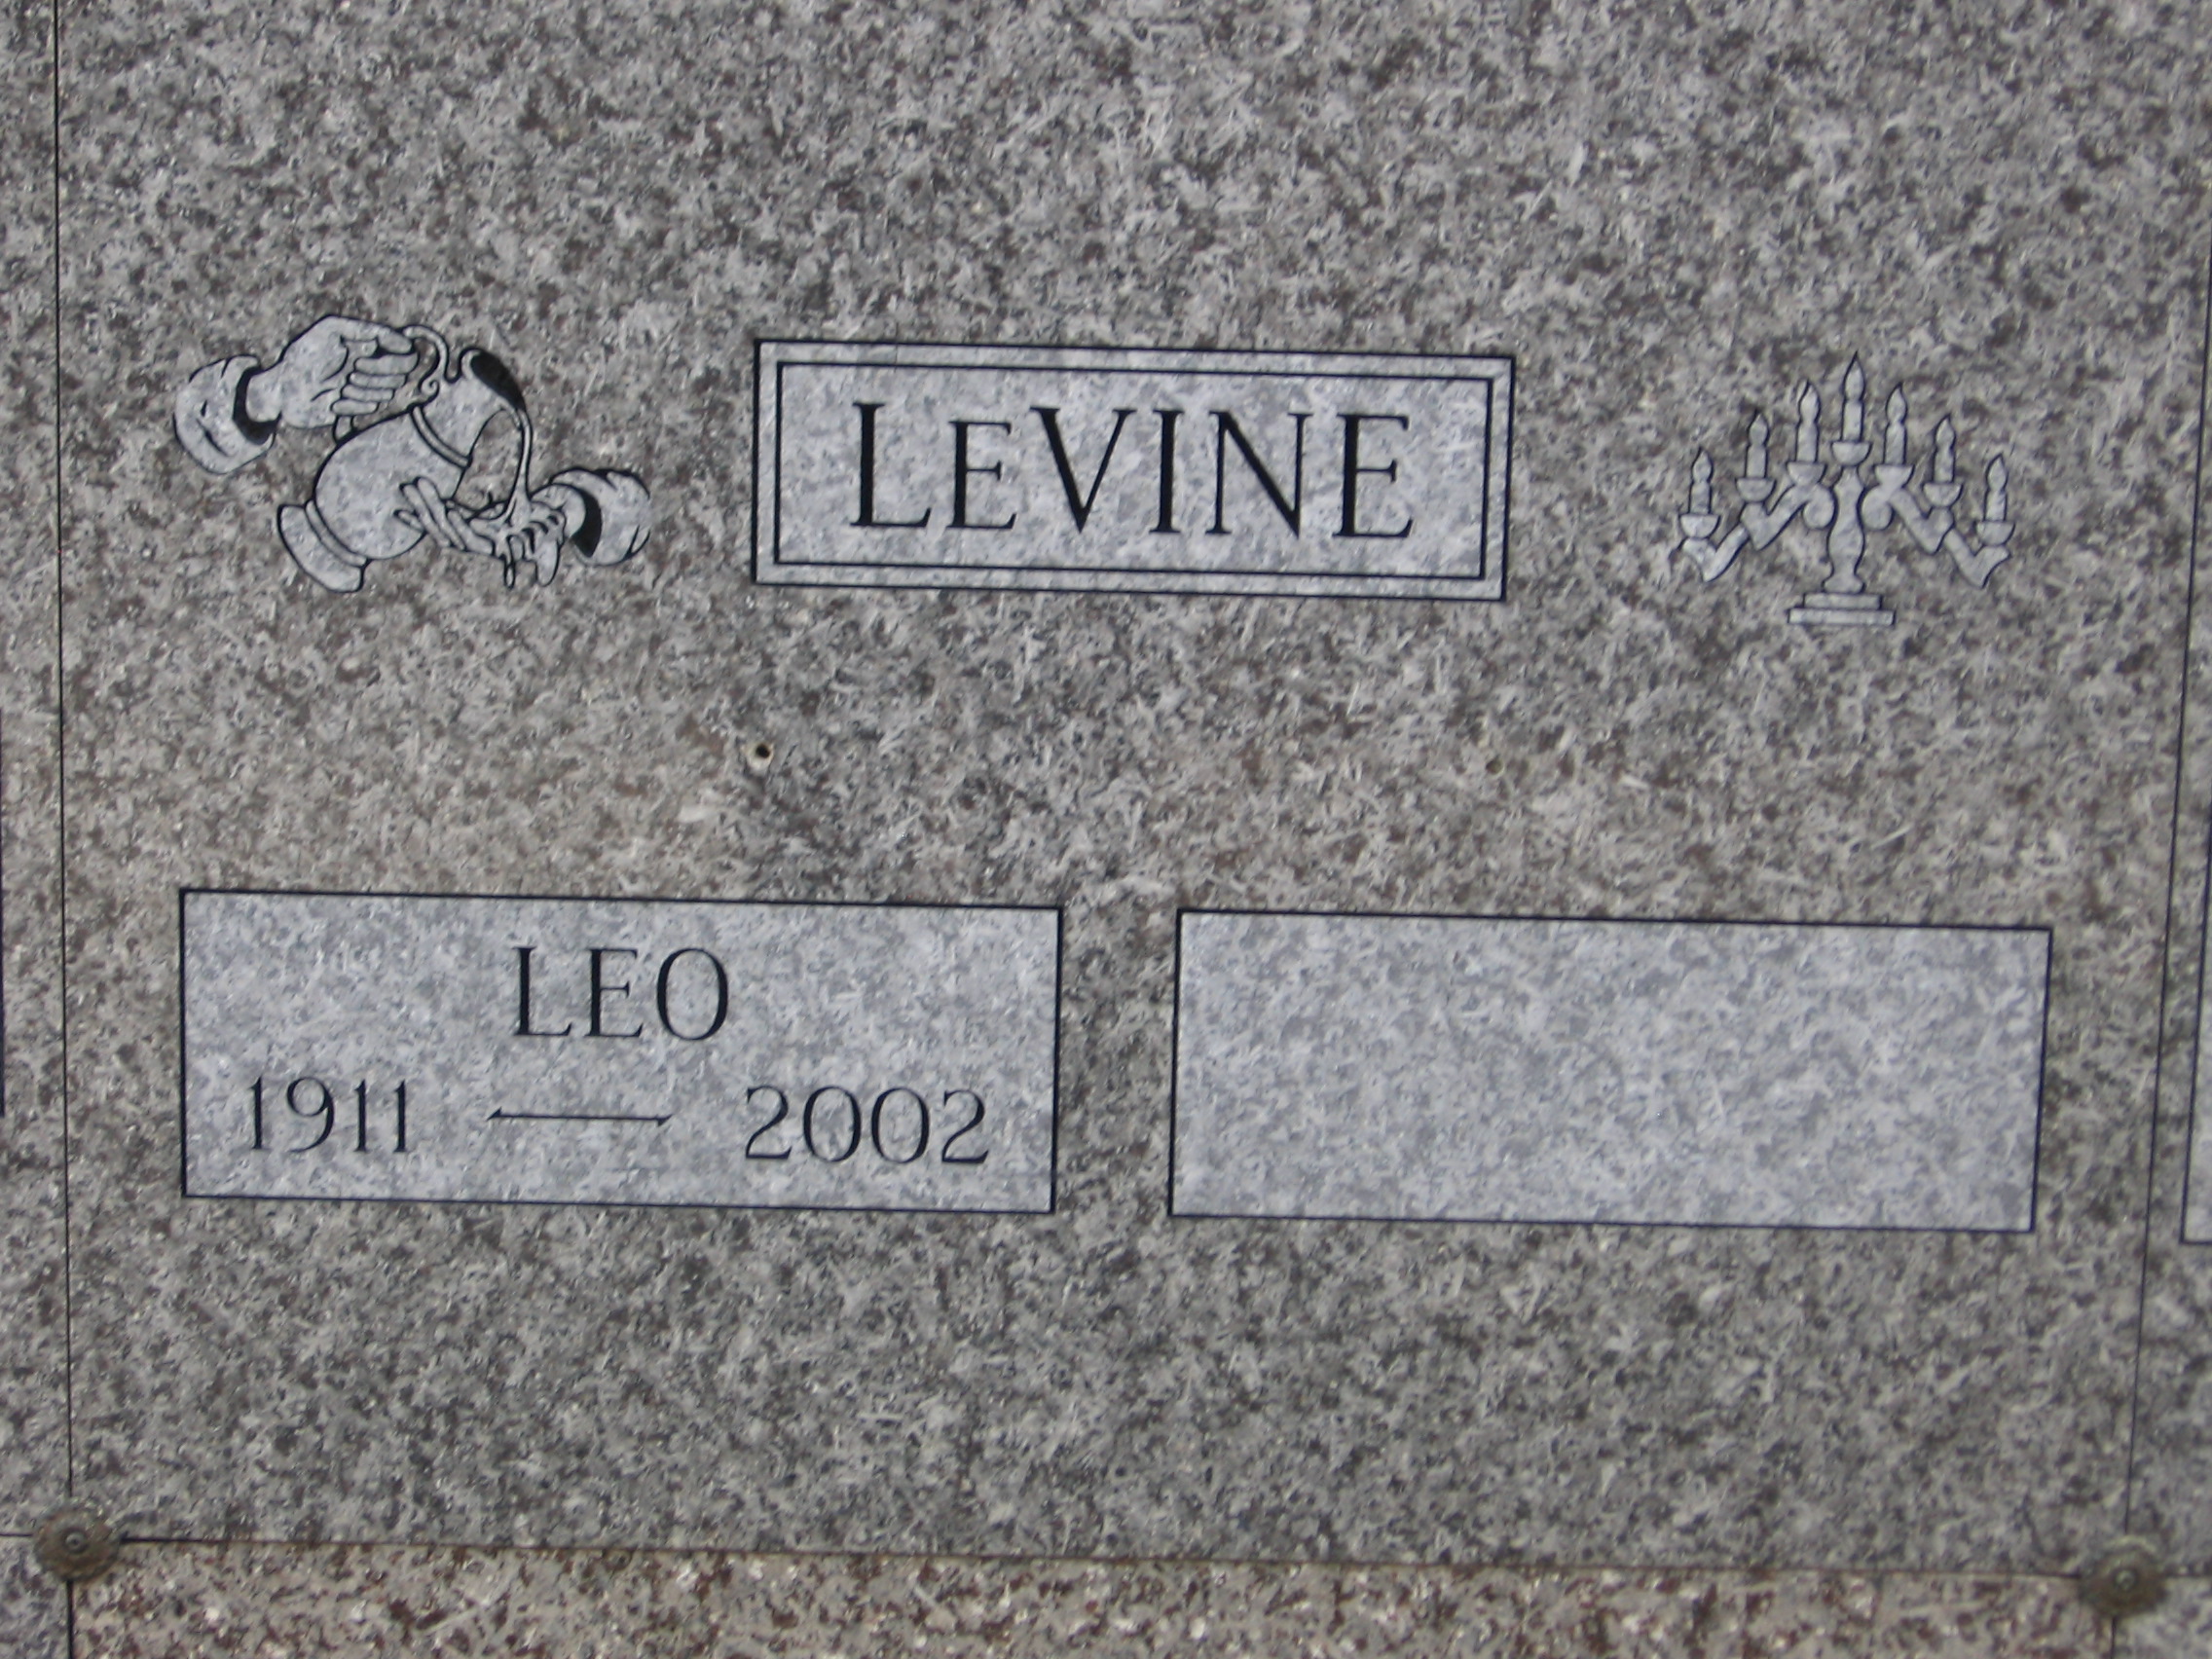 Leo LeVine